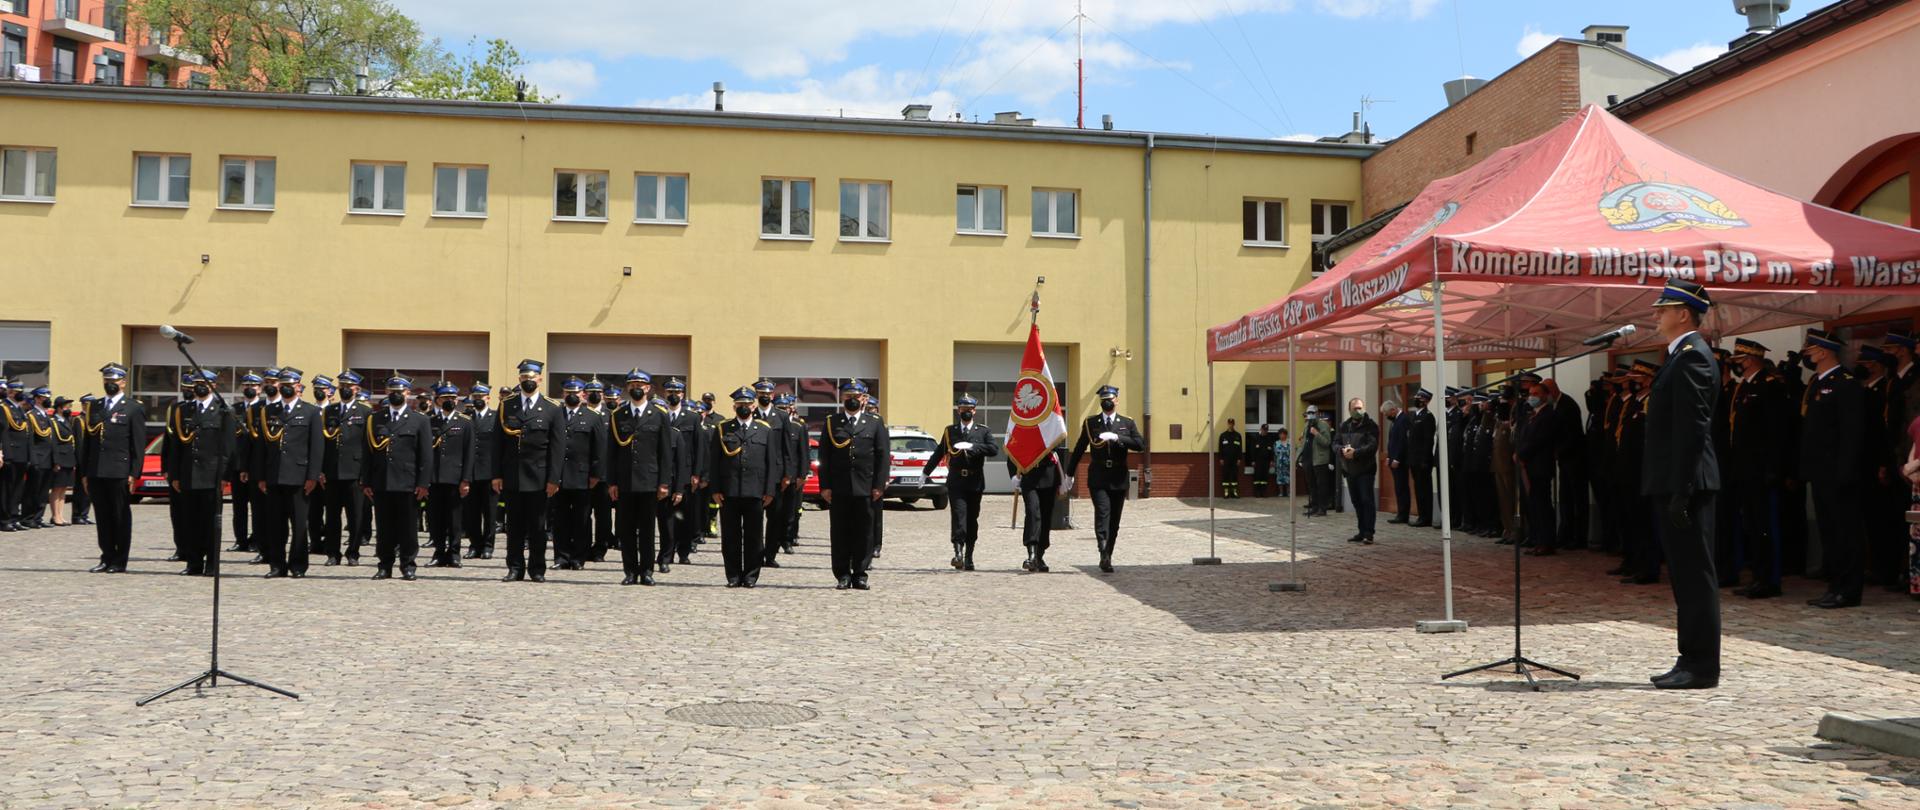 Dzień strażaka w KM PSP m.st. Warszawy